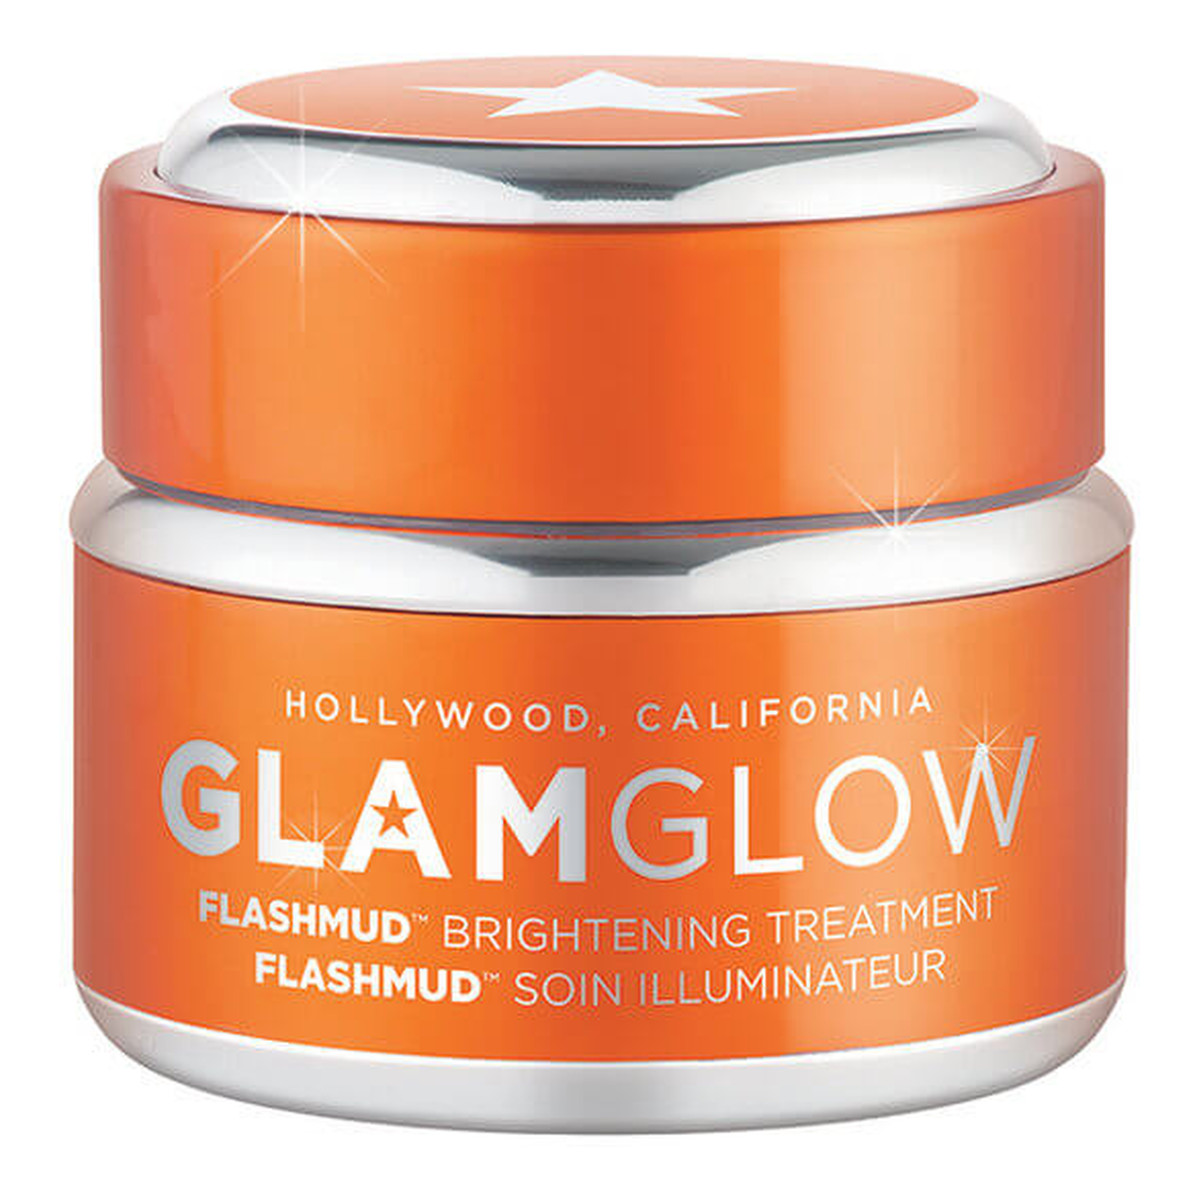 GlamGlow Flashmud Brightening Treatment Rozświetlająca maseczka do twarzy 15g